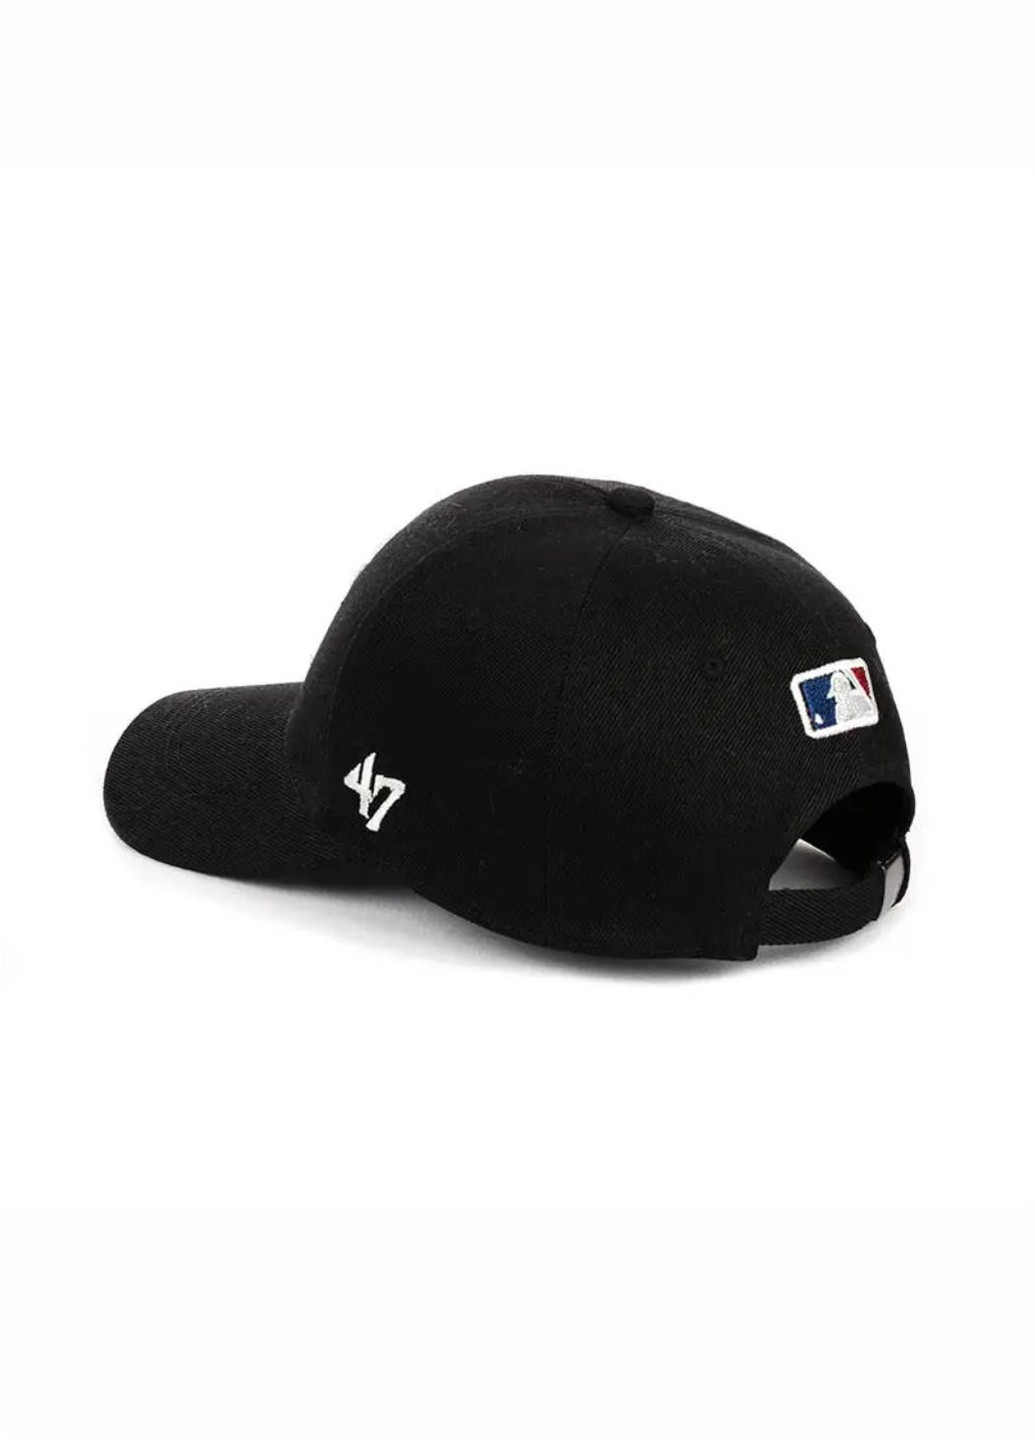 Кепка бейсболка с вышивкой New York (Нью Йорк) M/L Черный New Fashion кепка с сеткой (258122858)